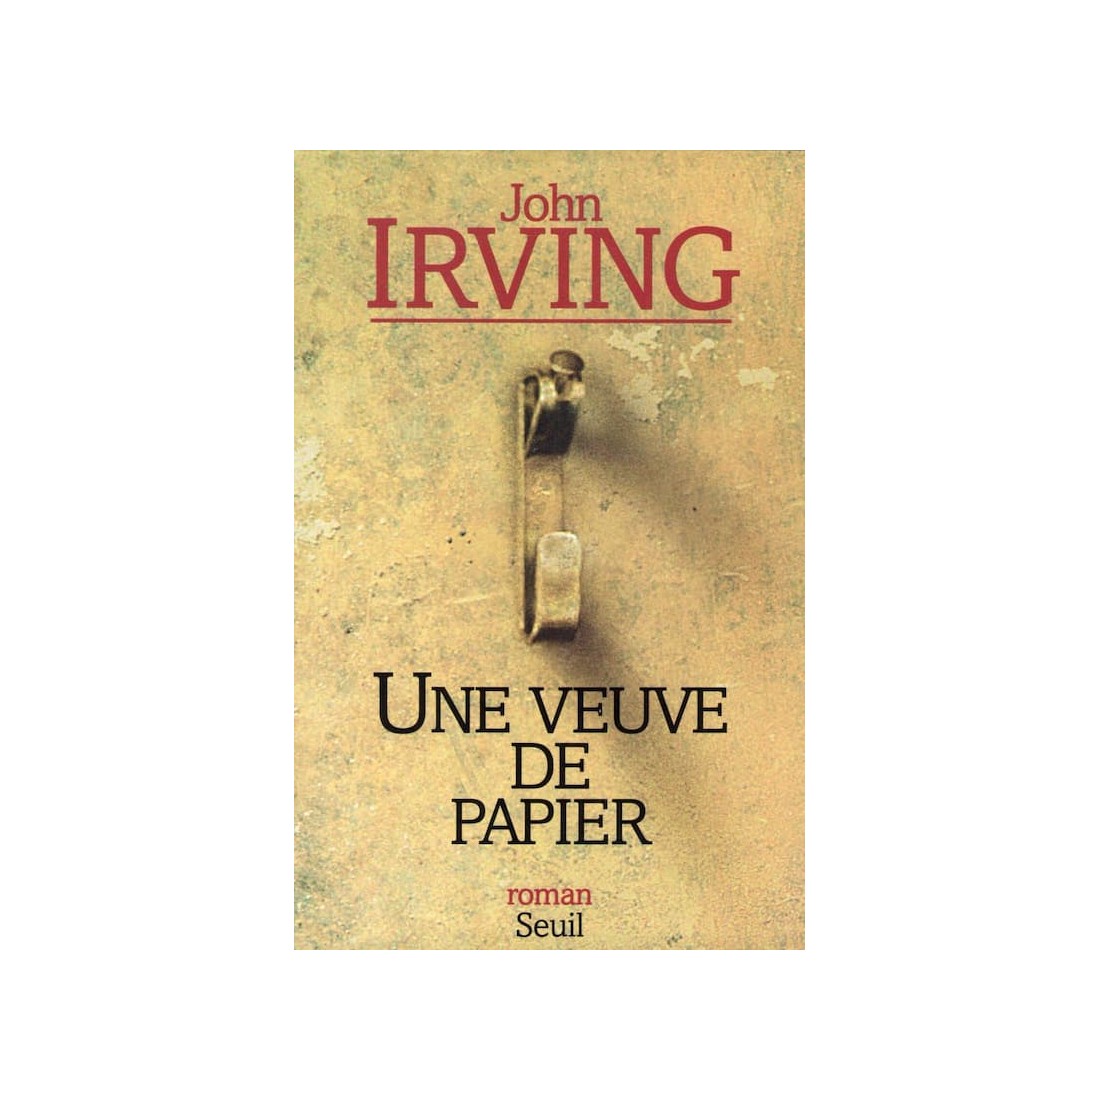 Une veuve de papier - Roman de John Irving - Ocazlivres.com